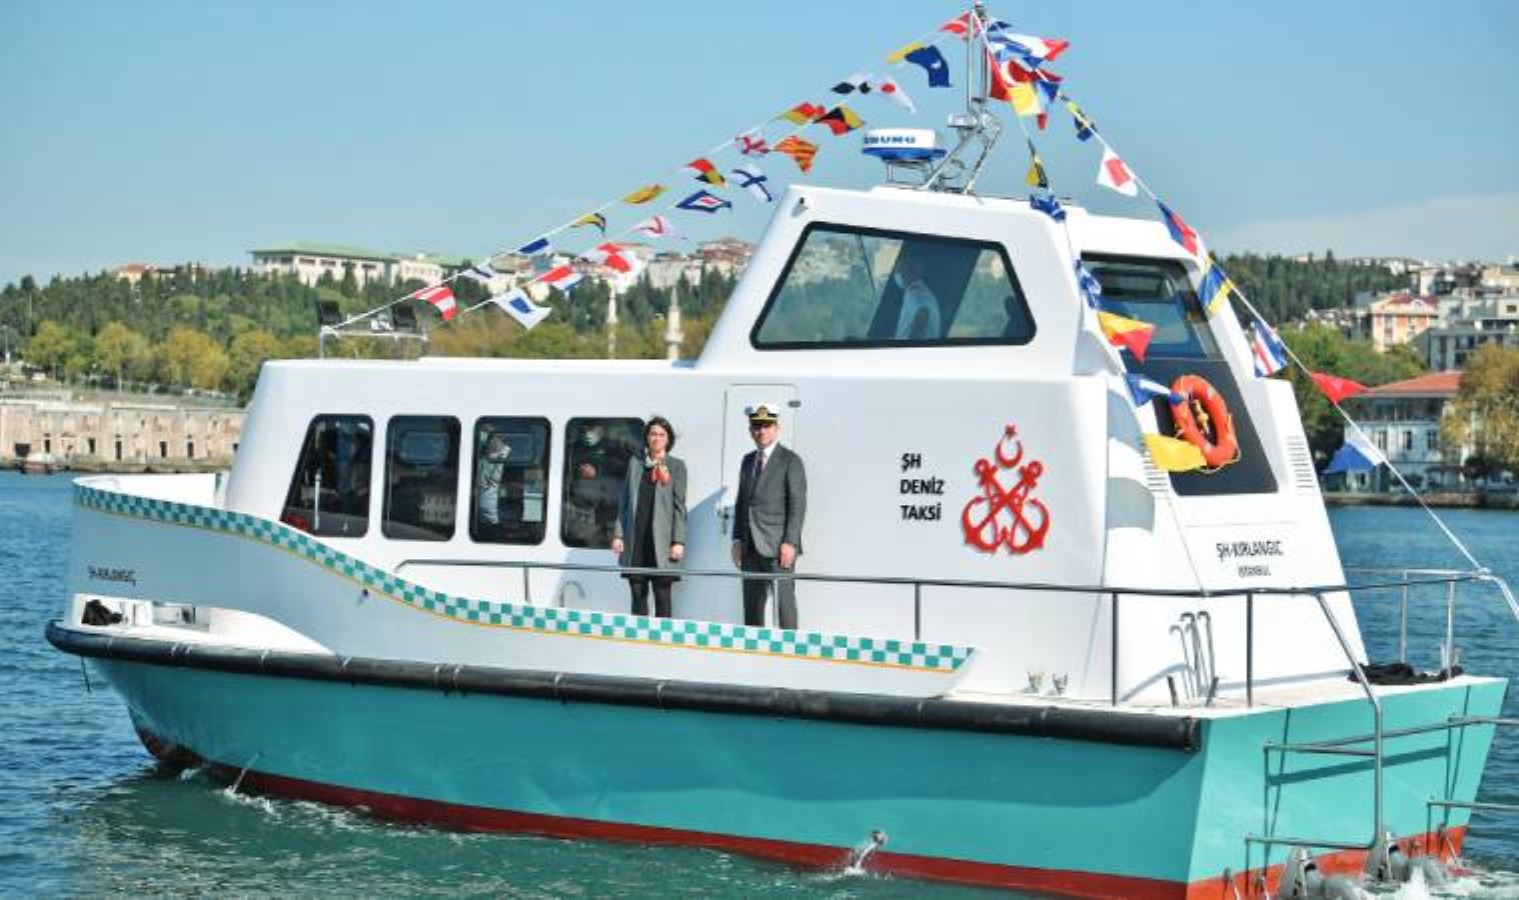 İstanbul'un kaptanı: “Deniz taksi İstanbul’a farklı bir soluk getirecek”